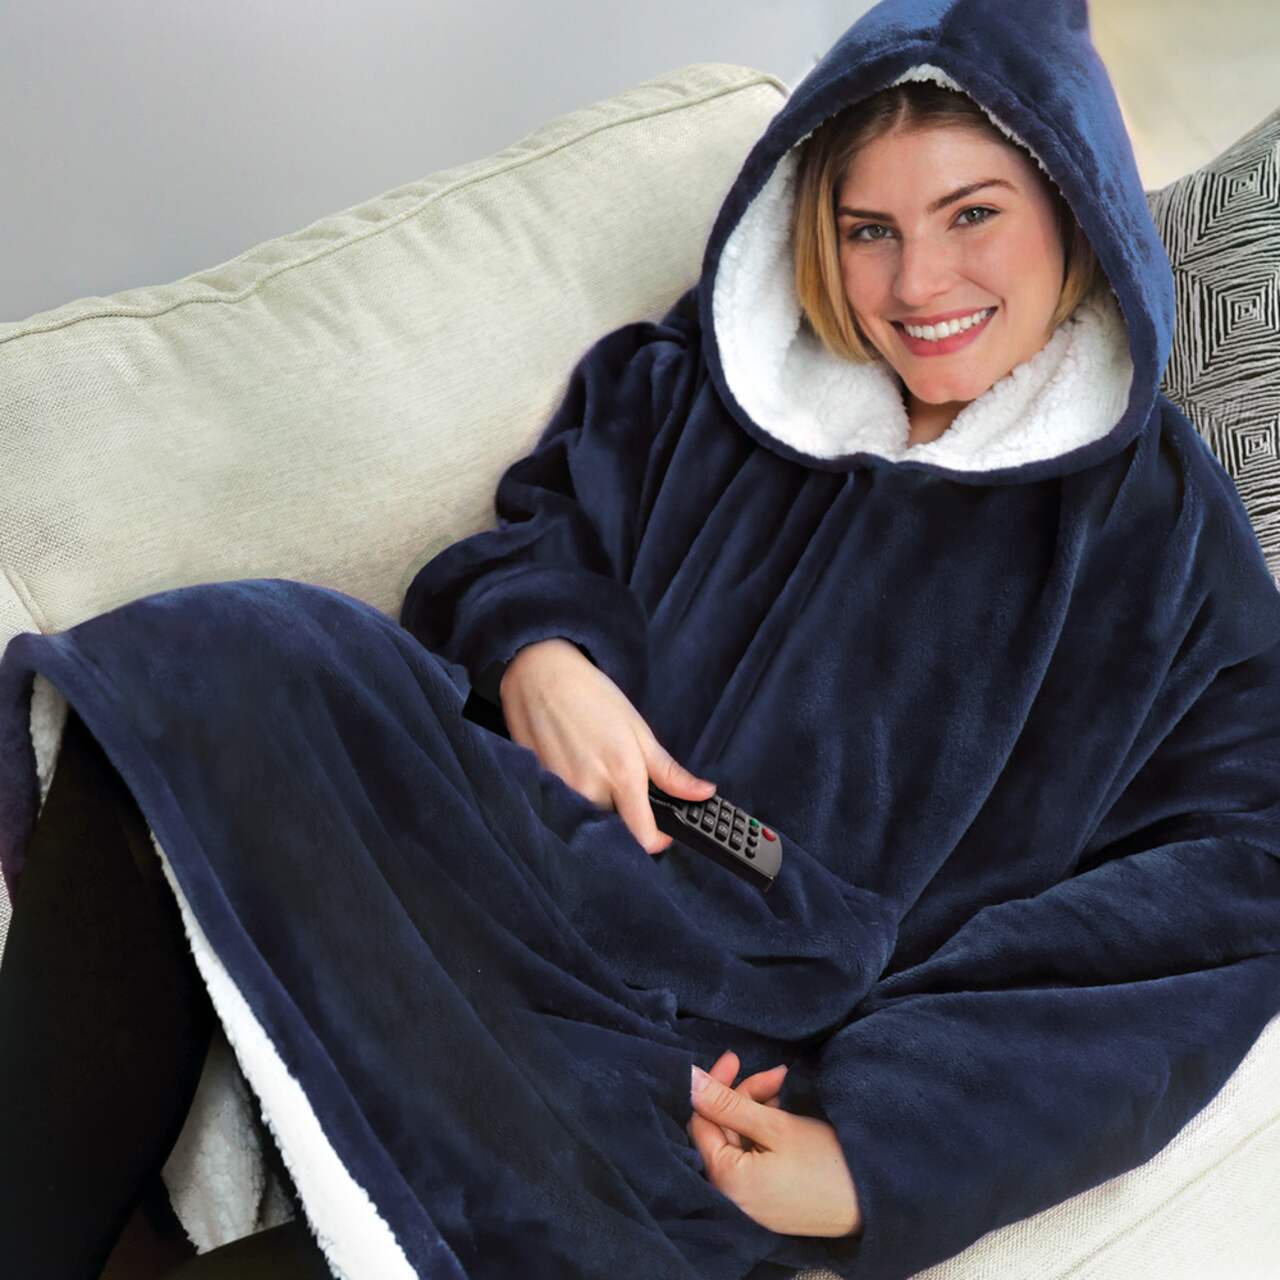 Huggle Hoodie™ Ultra Plush Blanket Hoodie, Blue